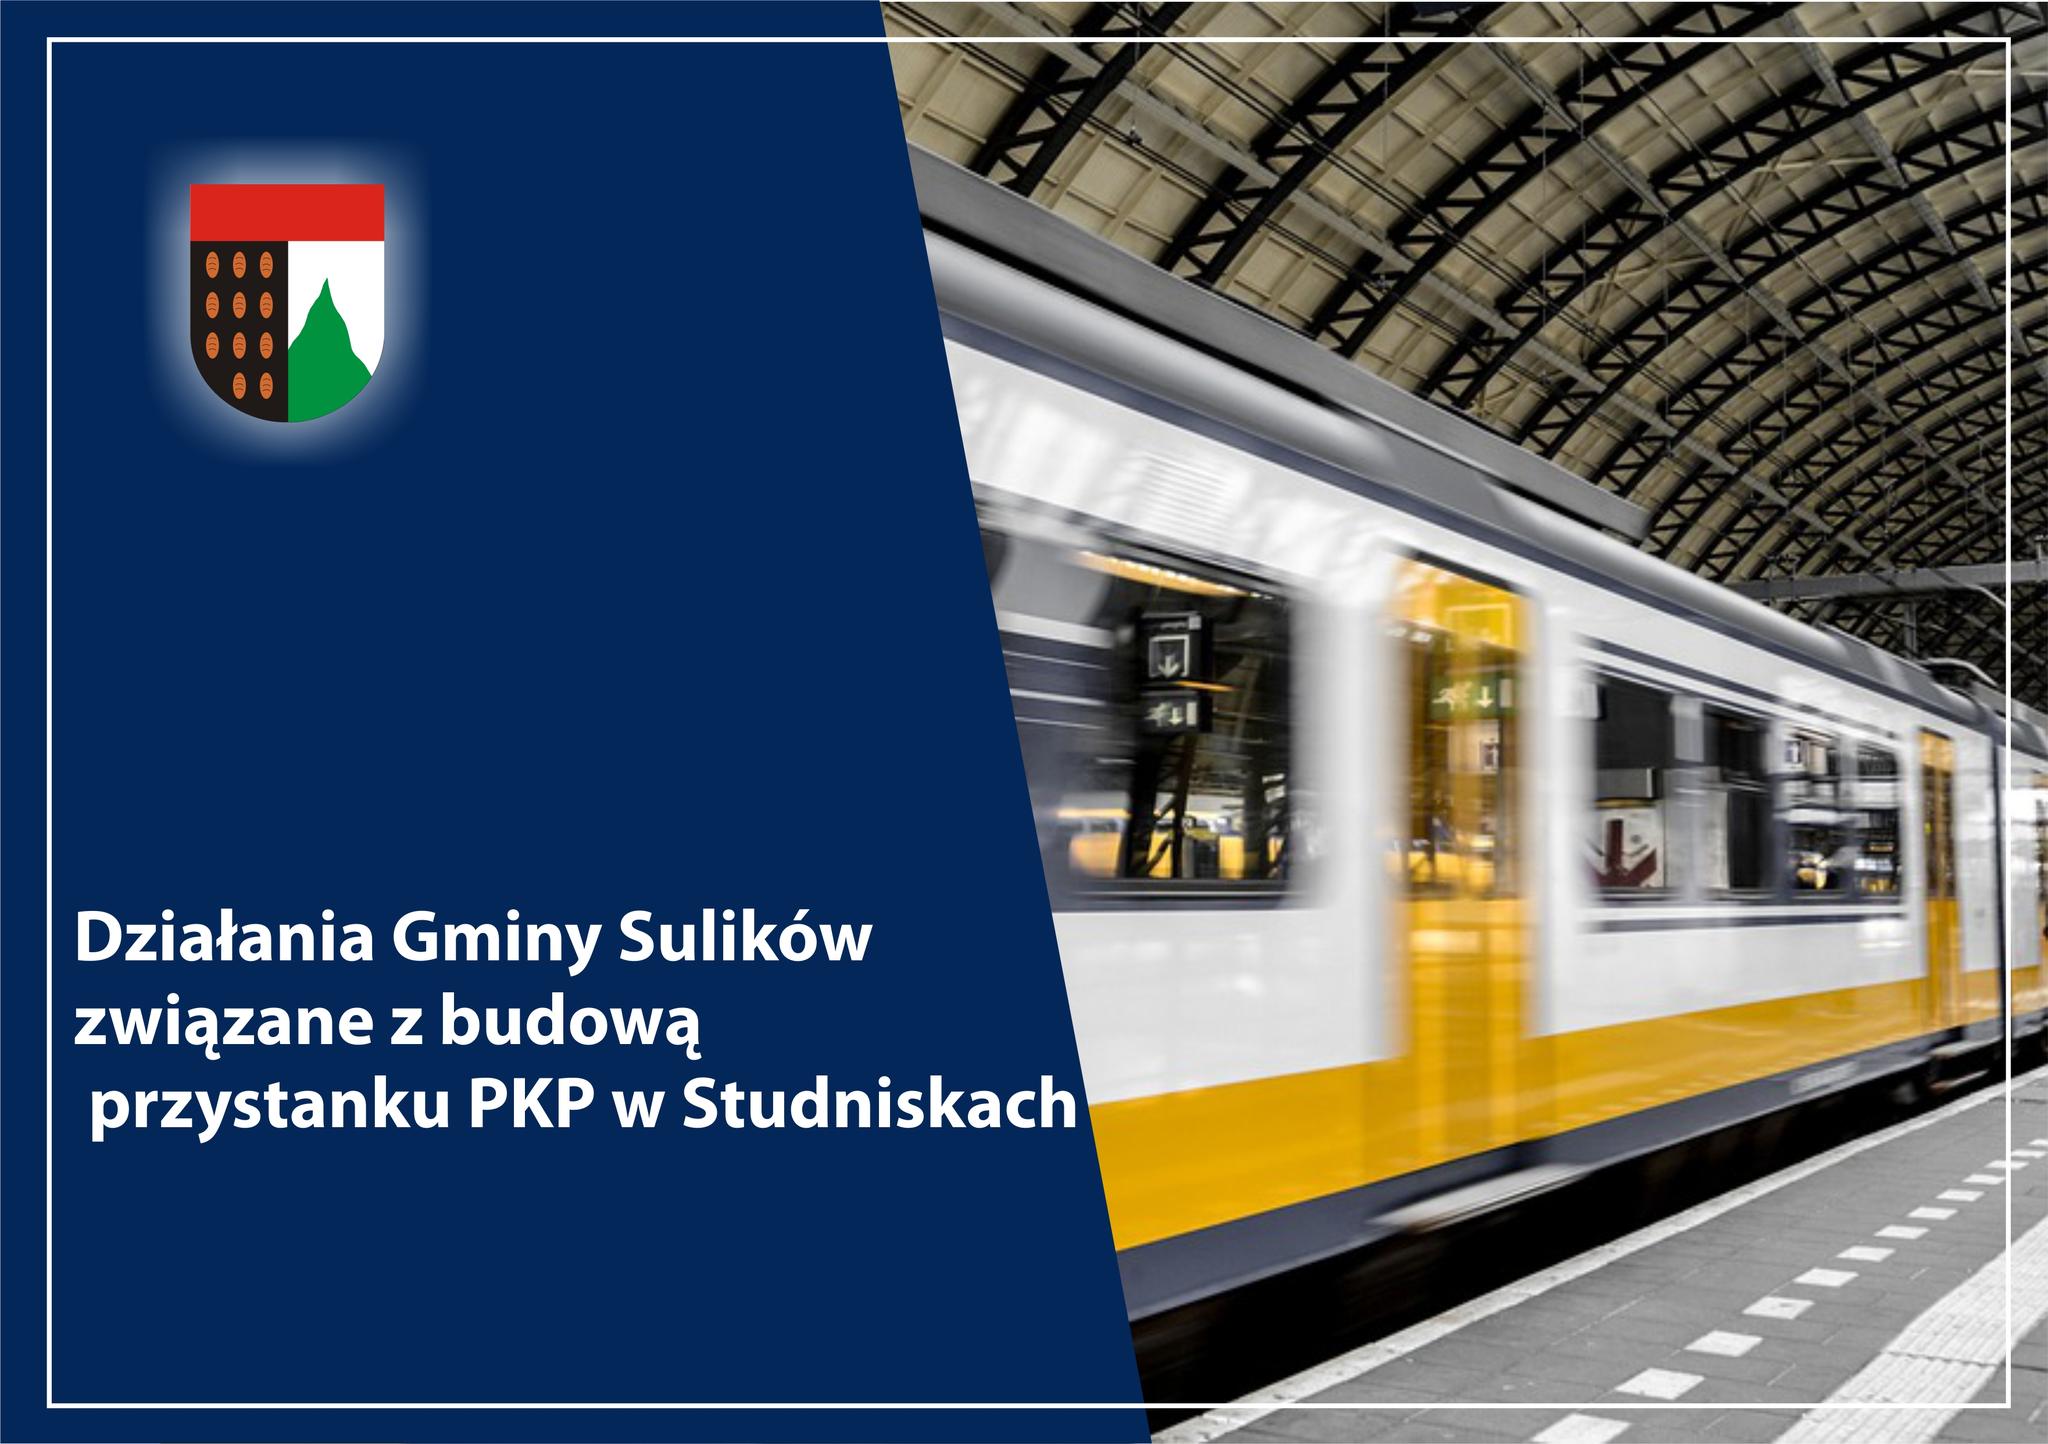 You are currently viewing SULIKÓW – Działania gminy związane z budową stacji PKP w Studniskach